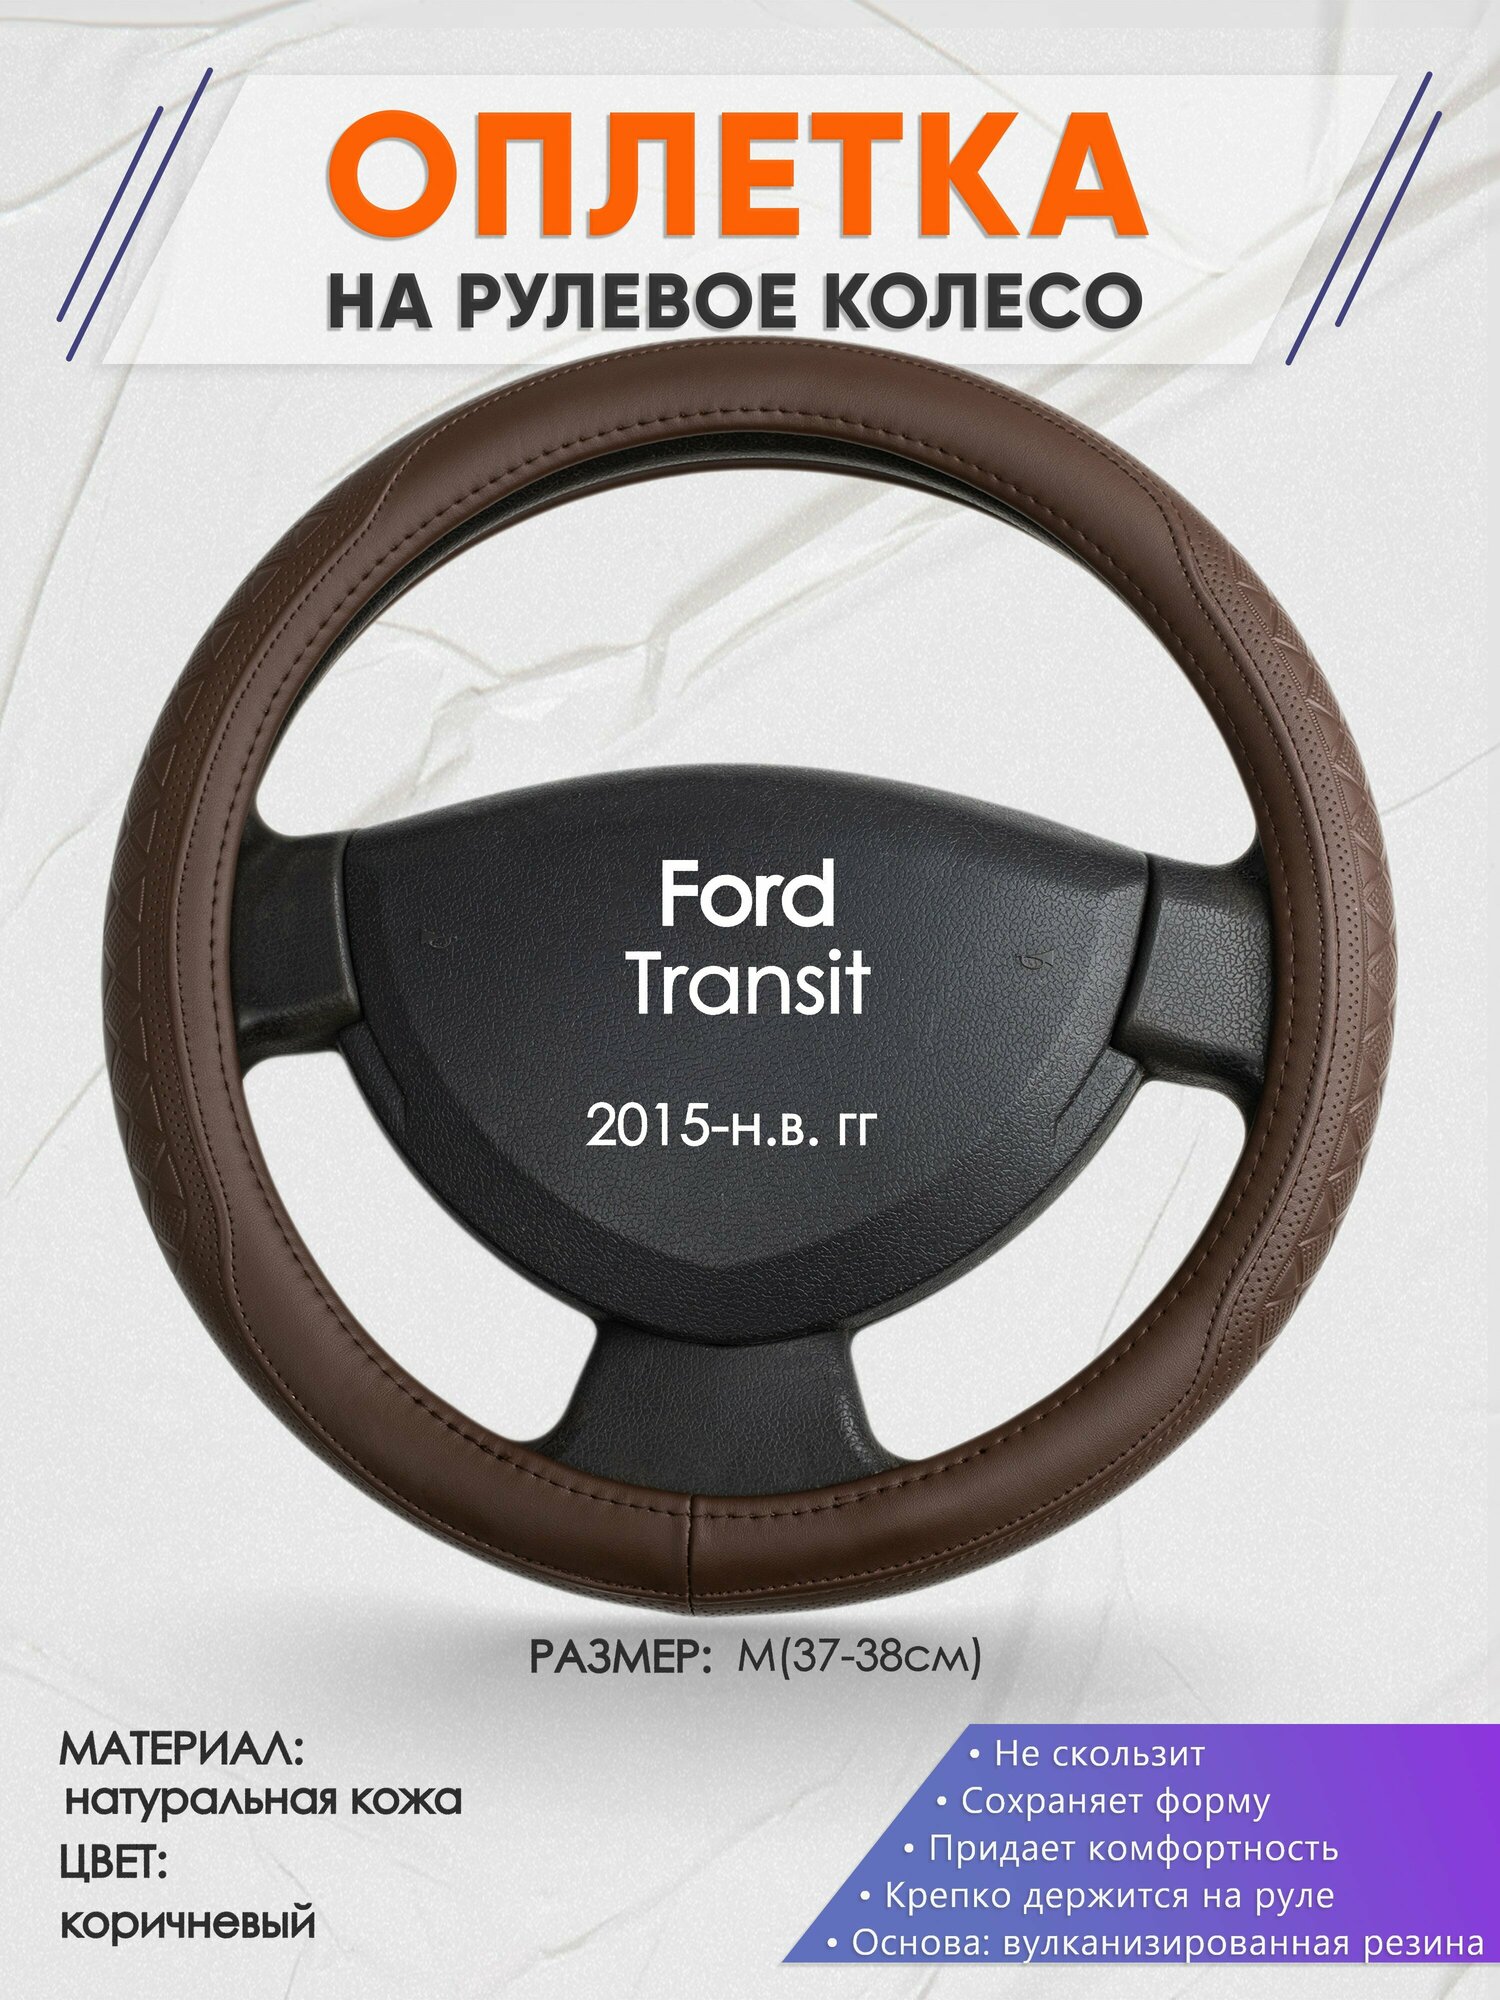 Оплетка на руль для Ford Transit (Форд Транзит) 2015-н. в, M(37-38см), Натуральная кожа 88